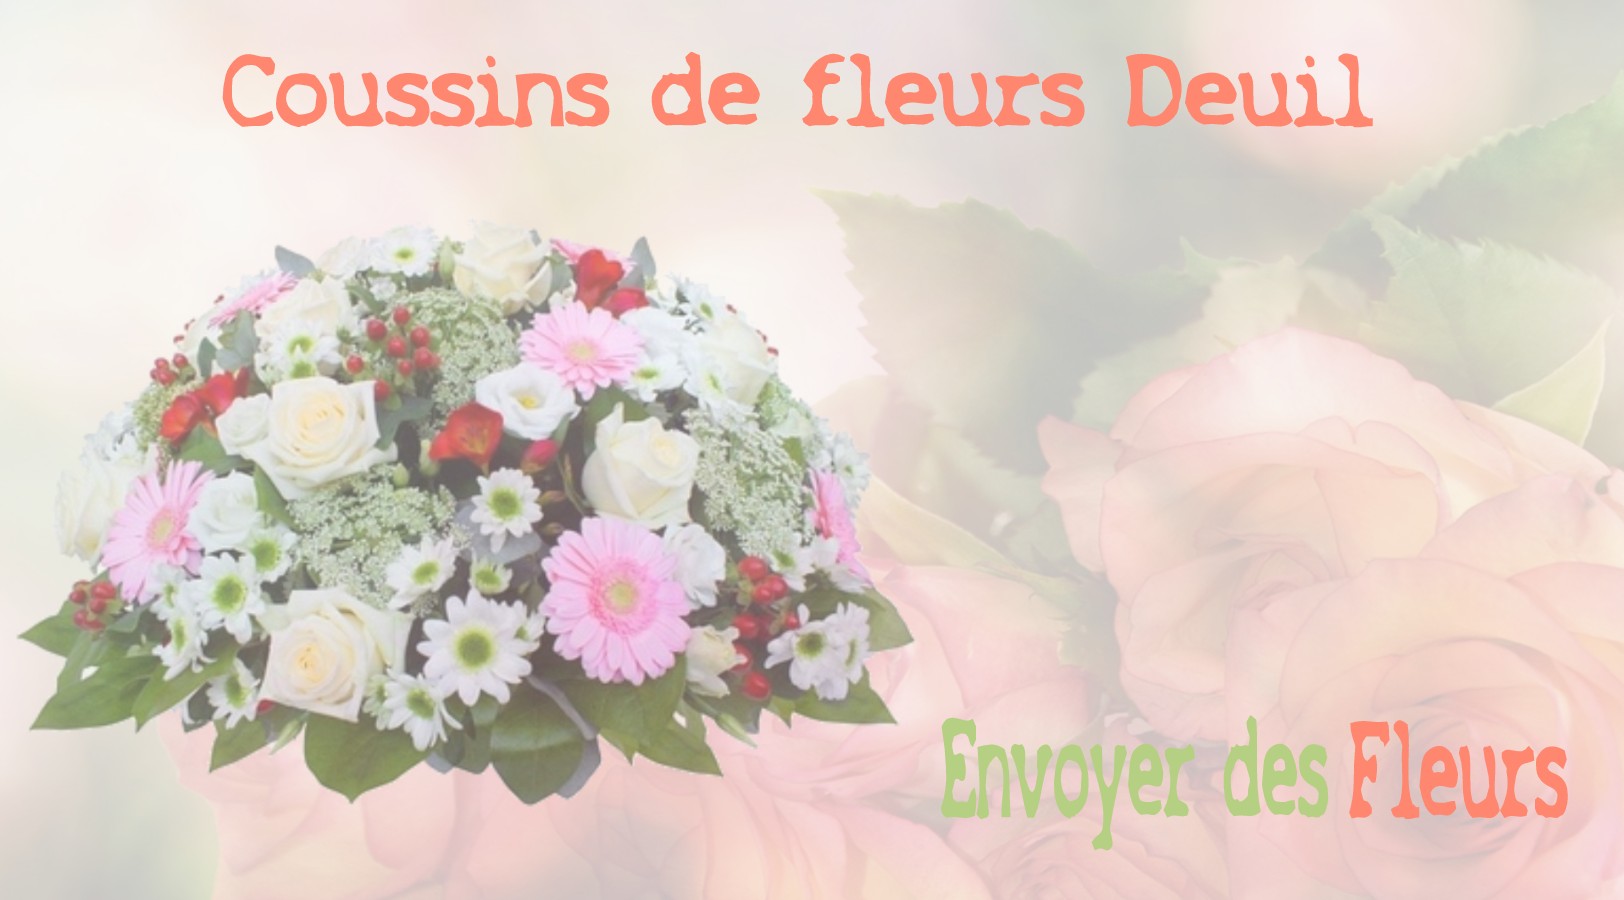 Les coussins de fleurs deuil - LIVRAISON FLEURS DEUIL A BALLAINVILLIERS 91